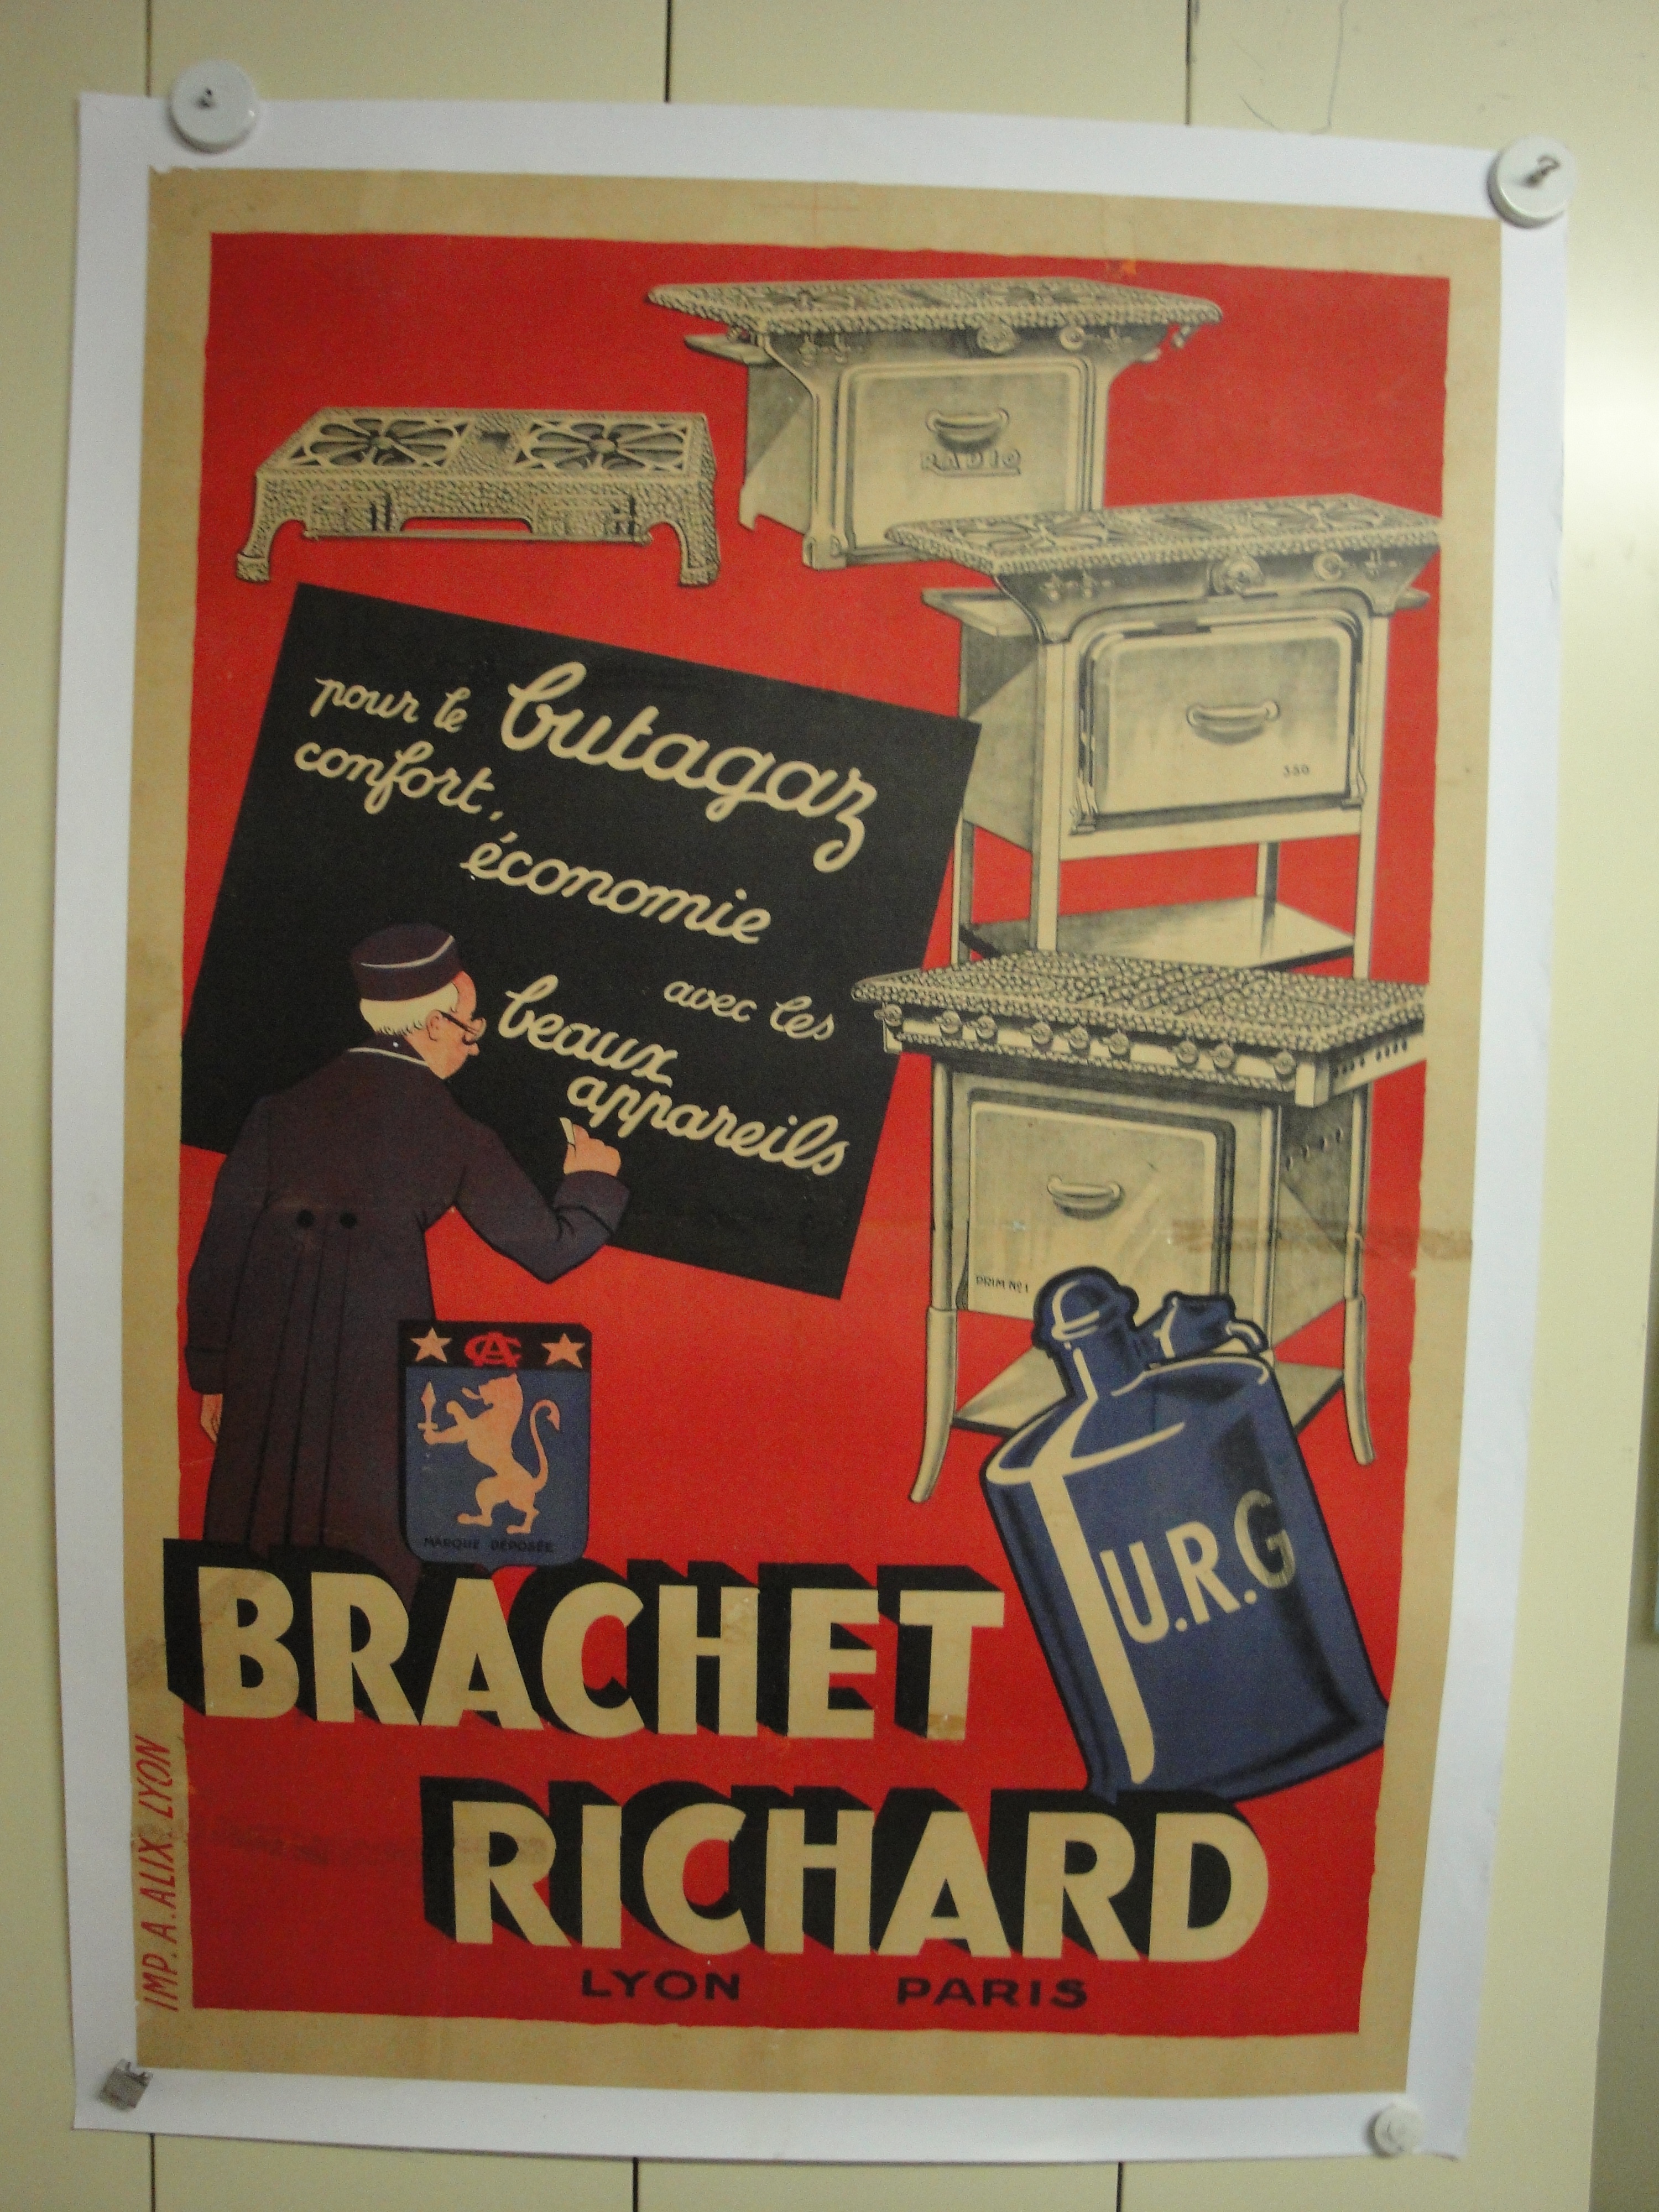  Collection ASPEG, pièce numéro 1835 : Pour le Butagaz confort Brachet Richard URG